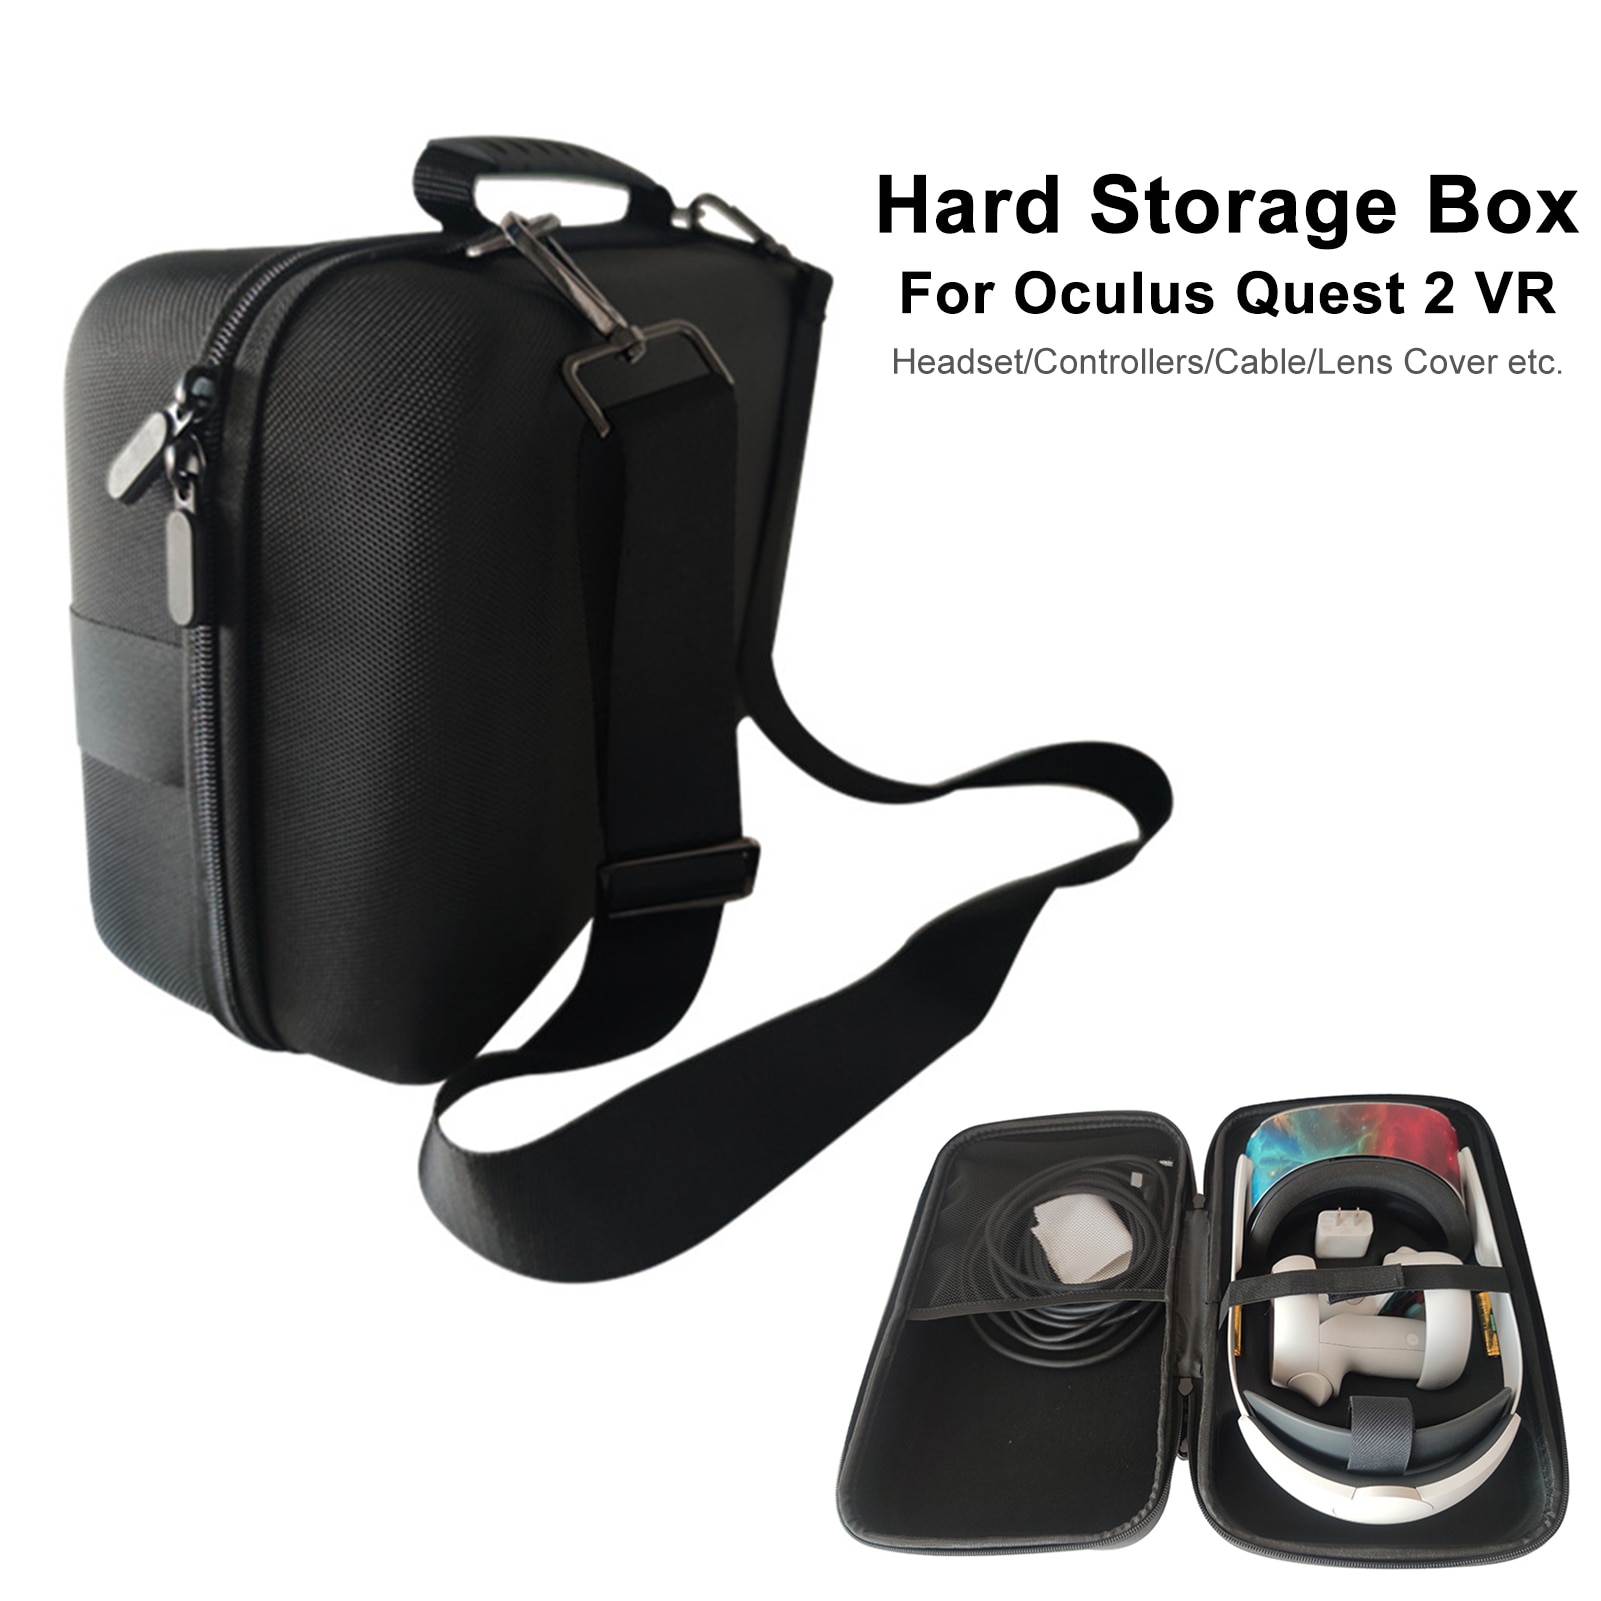 Voor Oculus Quest 2 Vr Headset Beschermhoes Harde Opbergdoos Reizen Draagtas Voor Quest 2 Controllers En Kabel accessoires